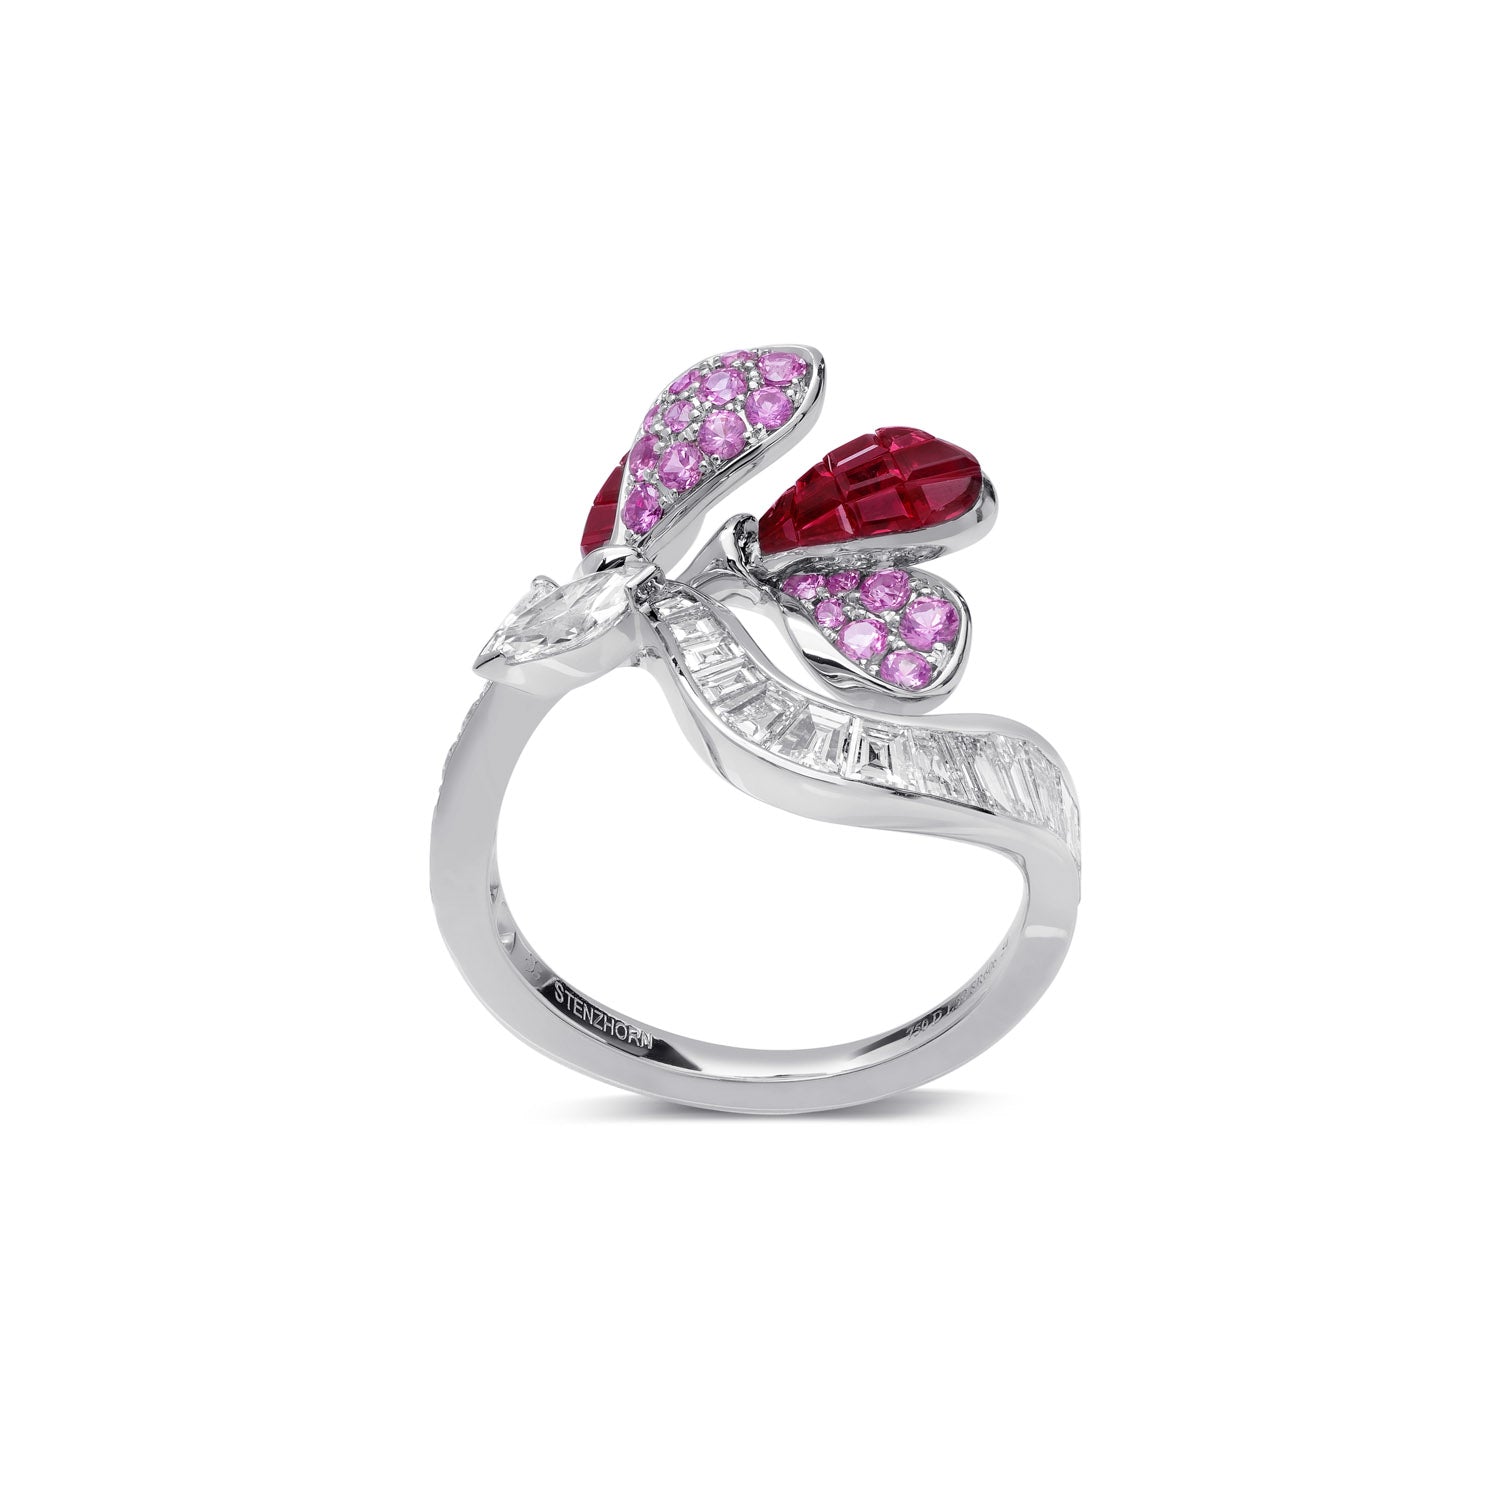 À FLEUR DE PARIS 红宝石和粉红蓝宝石戒指